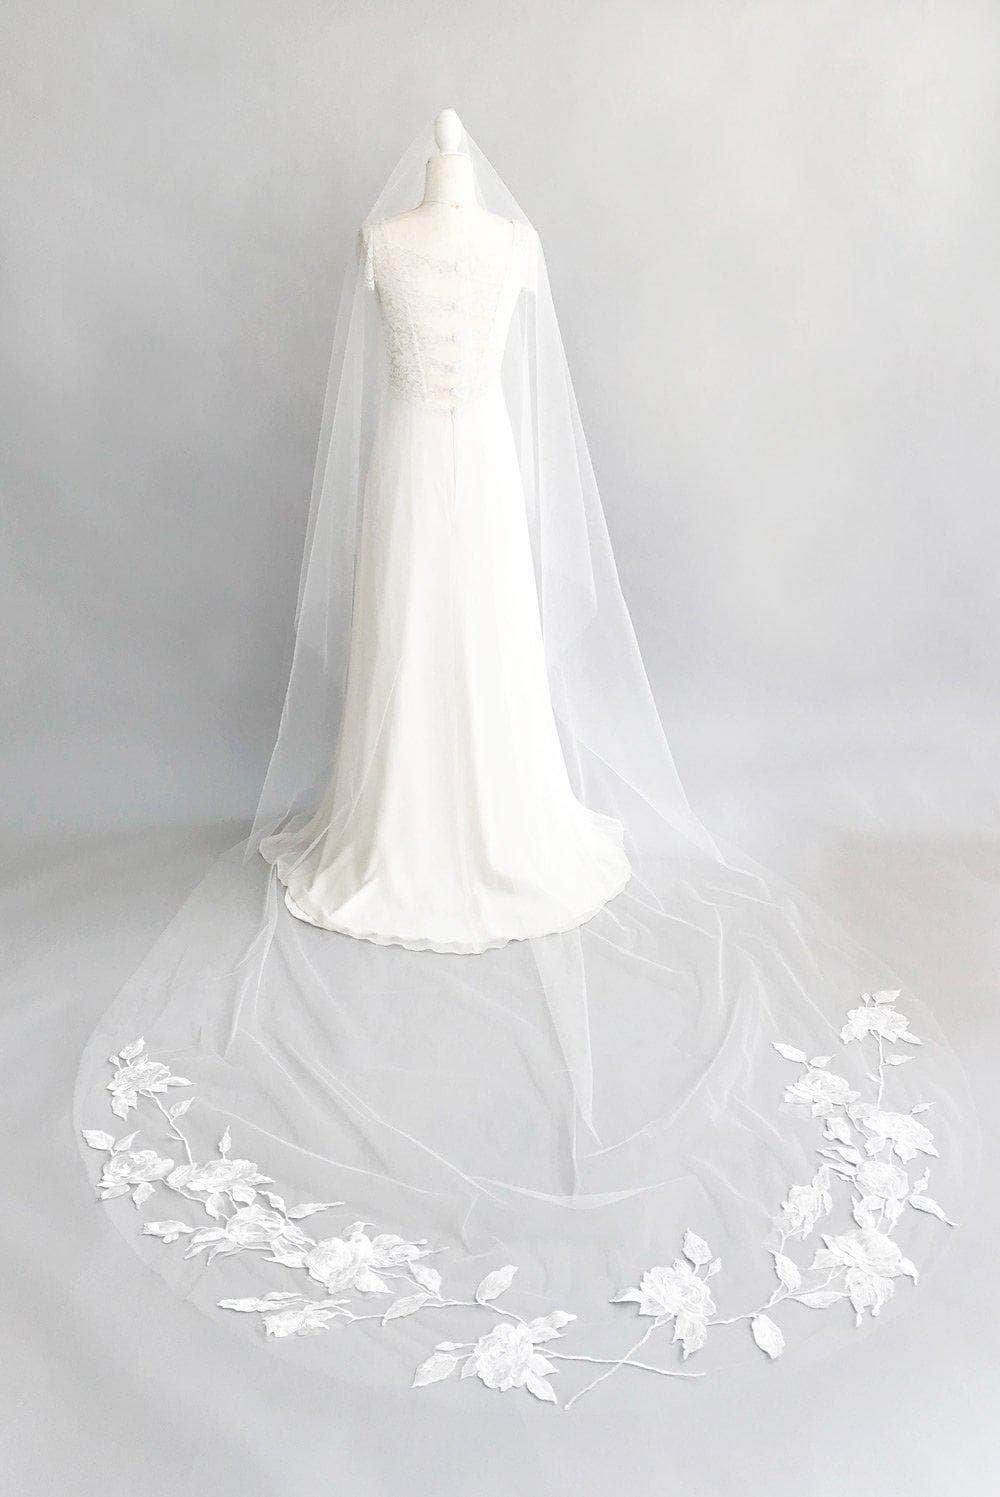 Custom Veil &#39;Custom veil- deposit for bespoke veil&#39;- £50 Custom wedding veil, the bespoke veil option